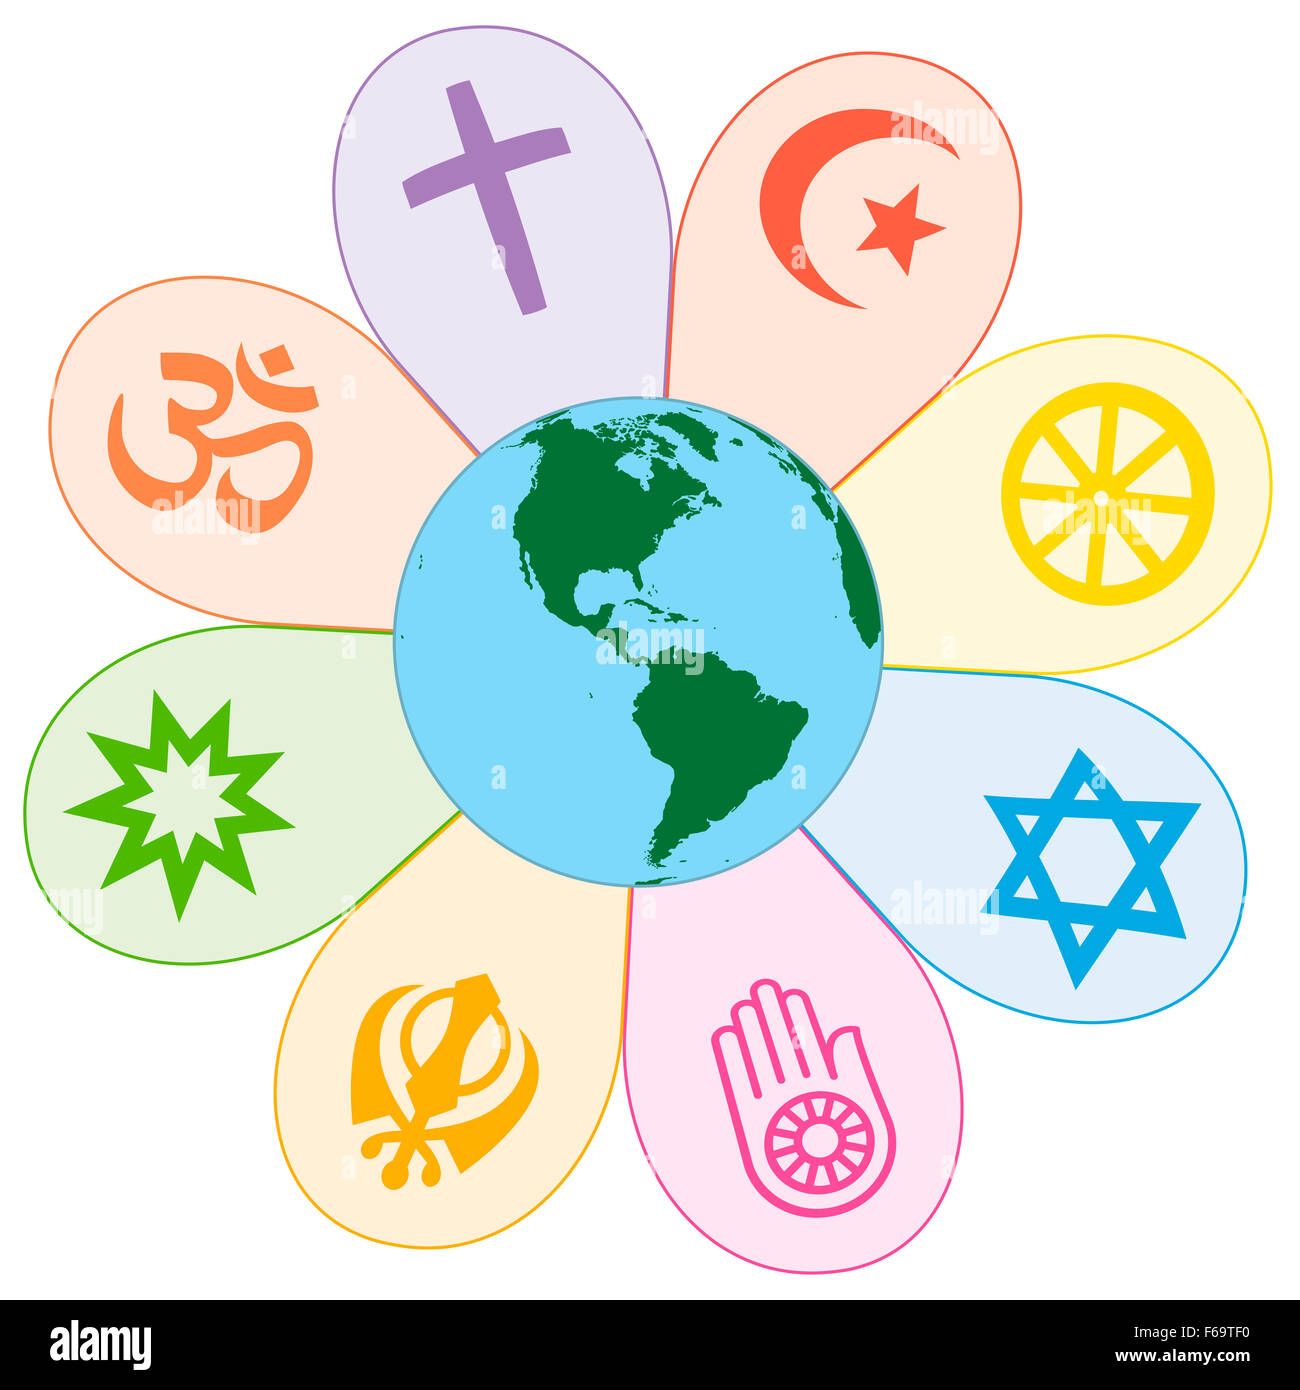 Weltreligionen vereint auf einer bunten Blume mit Erde im Zentrum. Abbildung auf weißem Hintergrund. Stockfoto